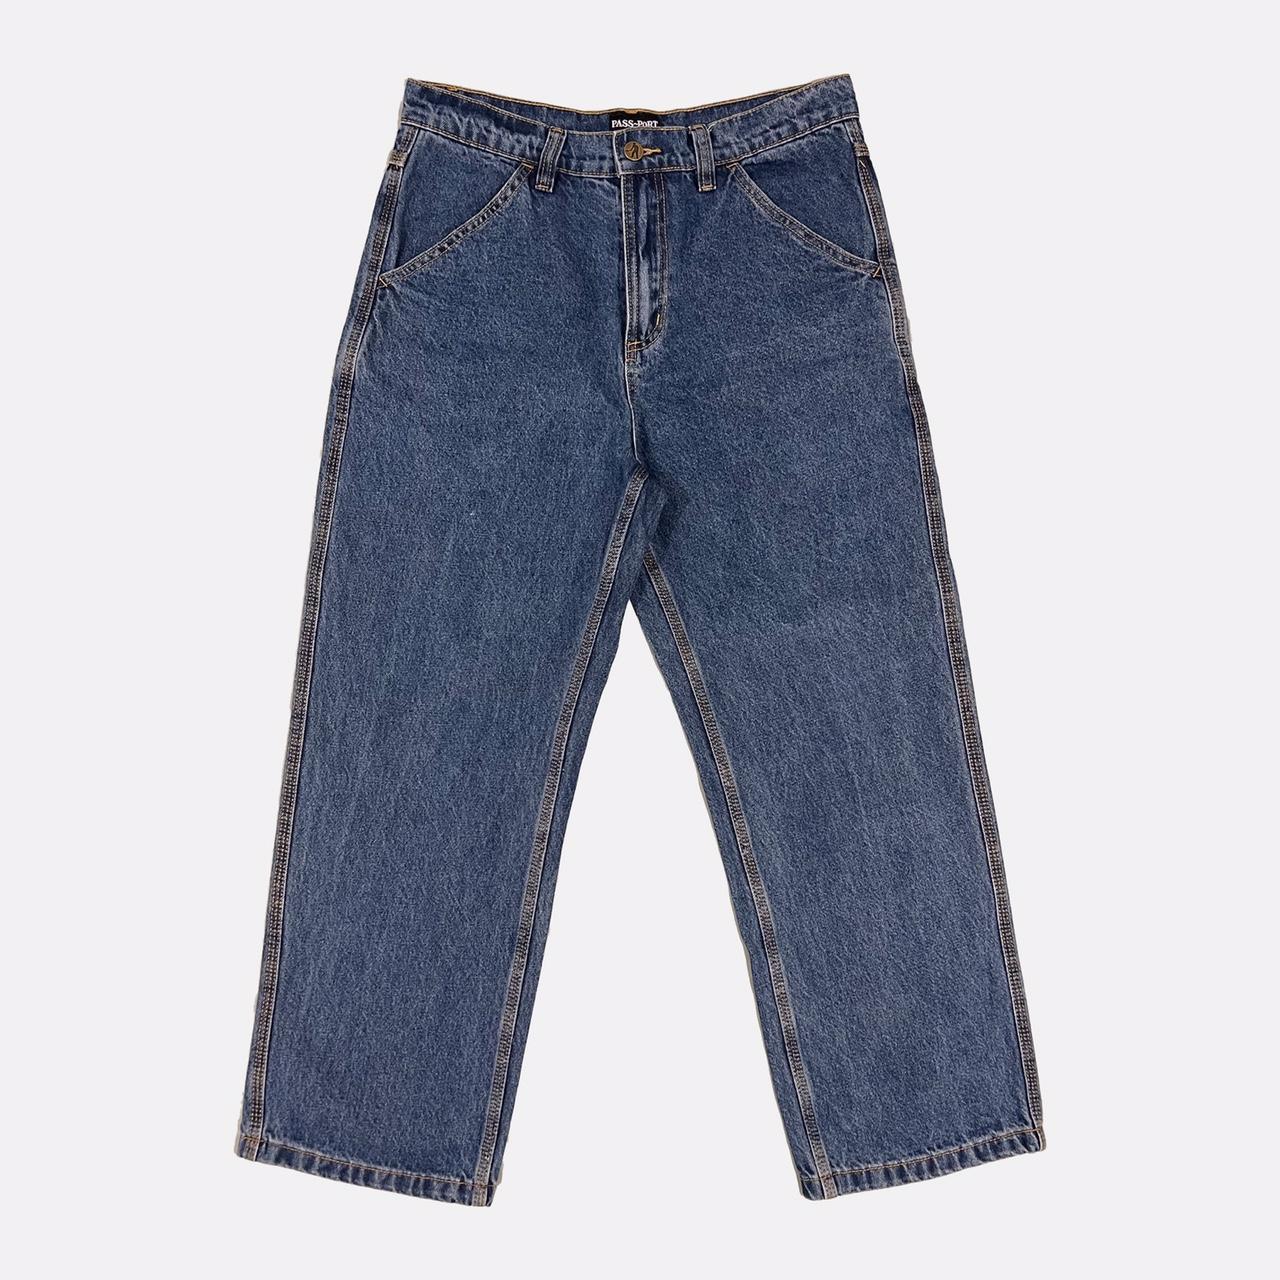 Pass Port Denim Jeans. Good condition. Size 30x30.... - Depop